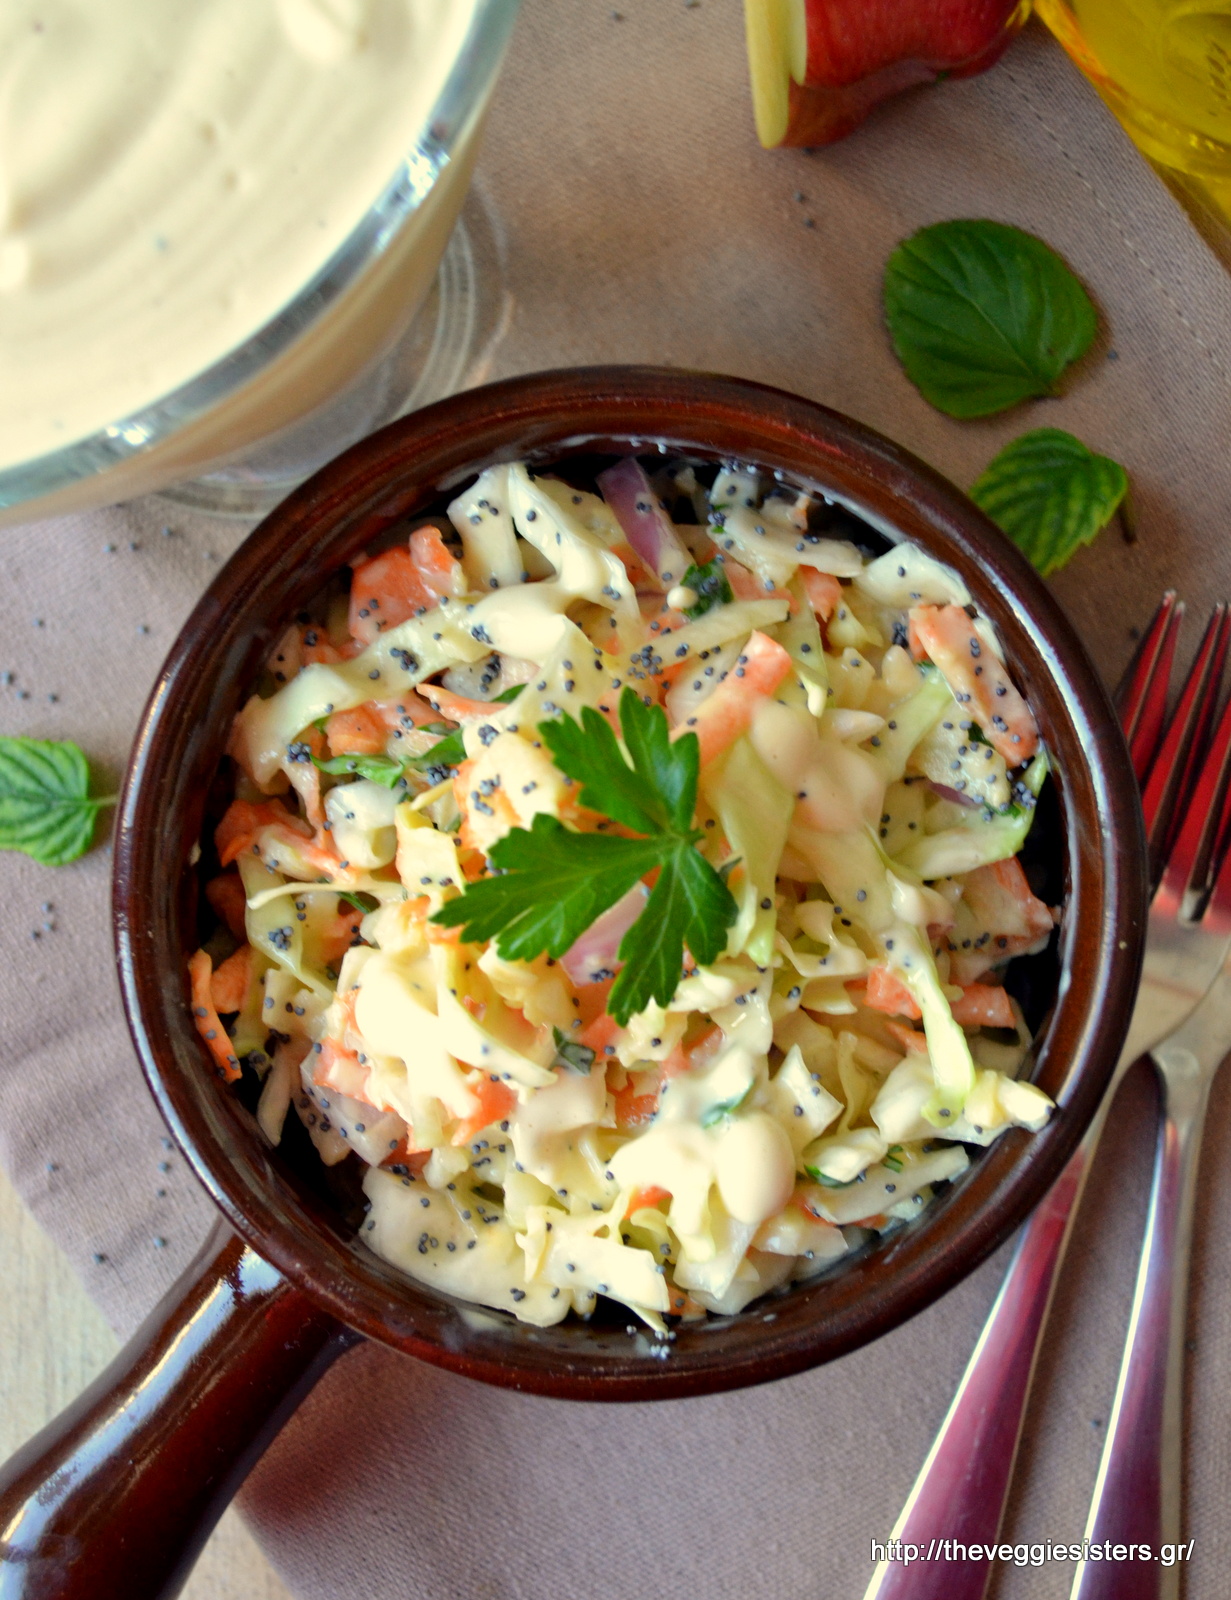 Σαλάτα coleslaw - Coleslaw salad